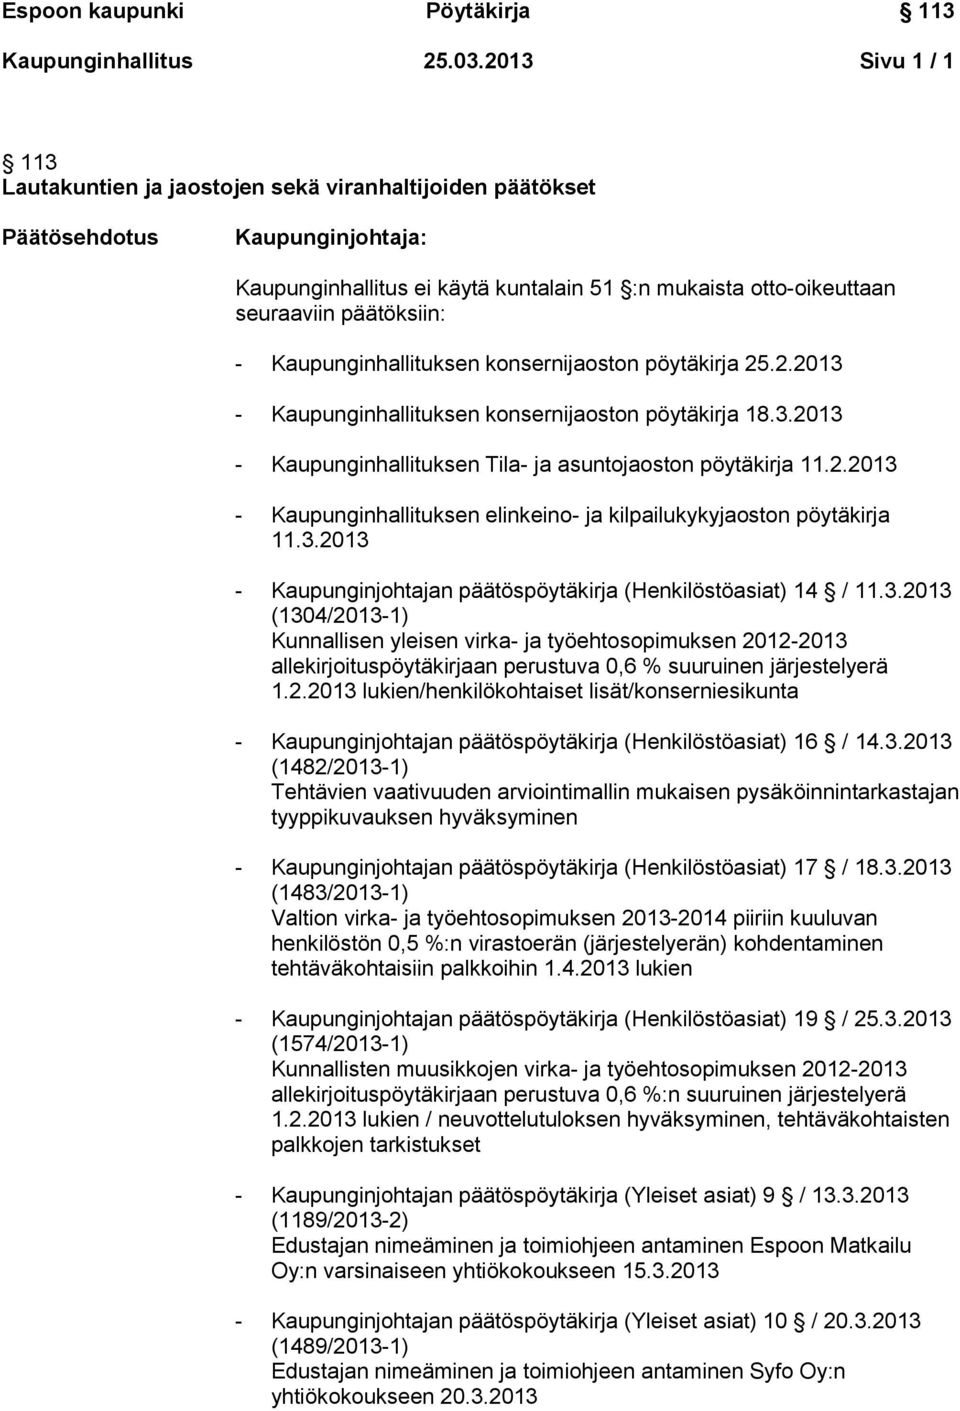 3.2013 (1304/2013-1) Kunnallisen yleisen virka- ja työehtosopimuksen 2012-2013 allekirjoituspöytäkirjaan perustuva 0,6 % suuruinen järjestelyerä 1.2.2013 lukien/henkilökohtaiset lisät/konserniesikunta - Kaupunginjohtajan päätöspöytäkirja (Henkilöstöasiat) 16 / 14.